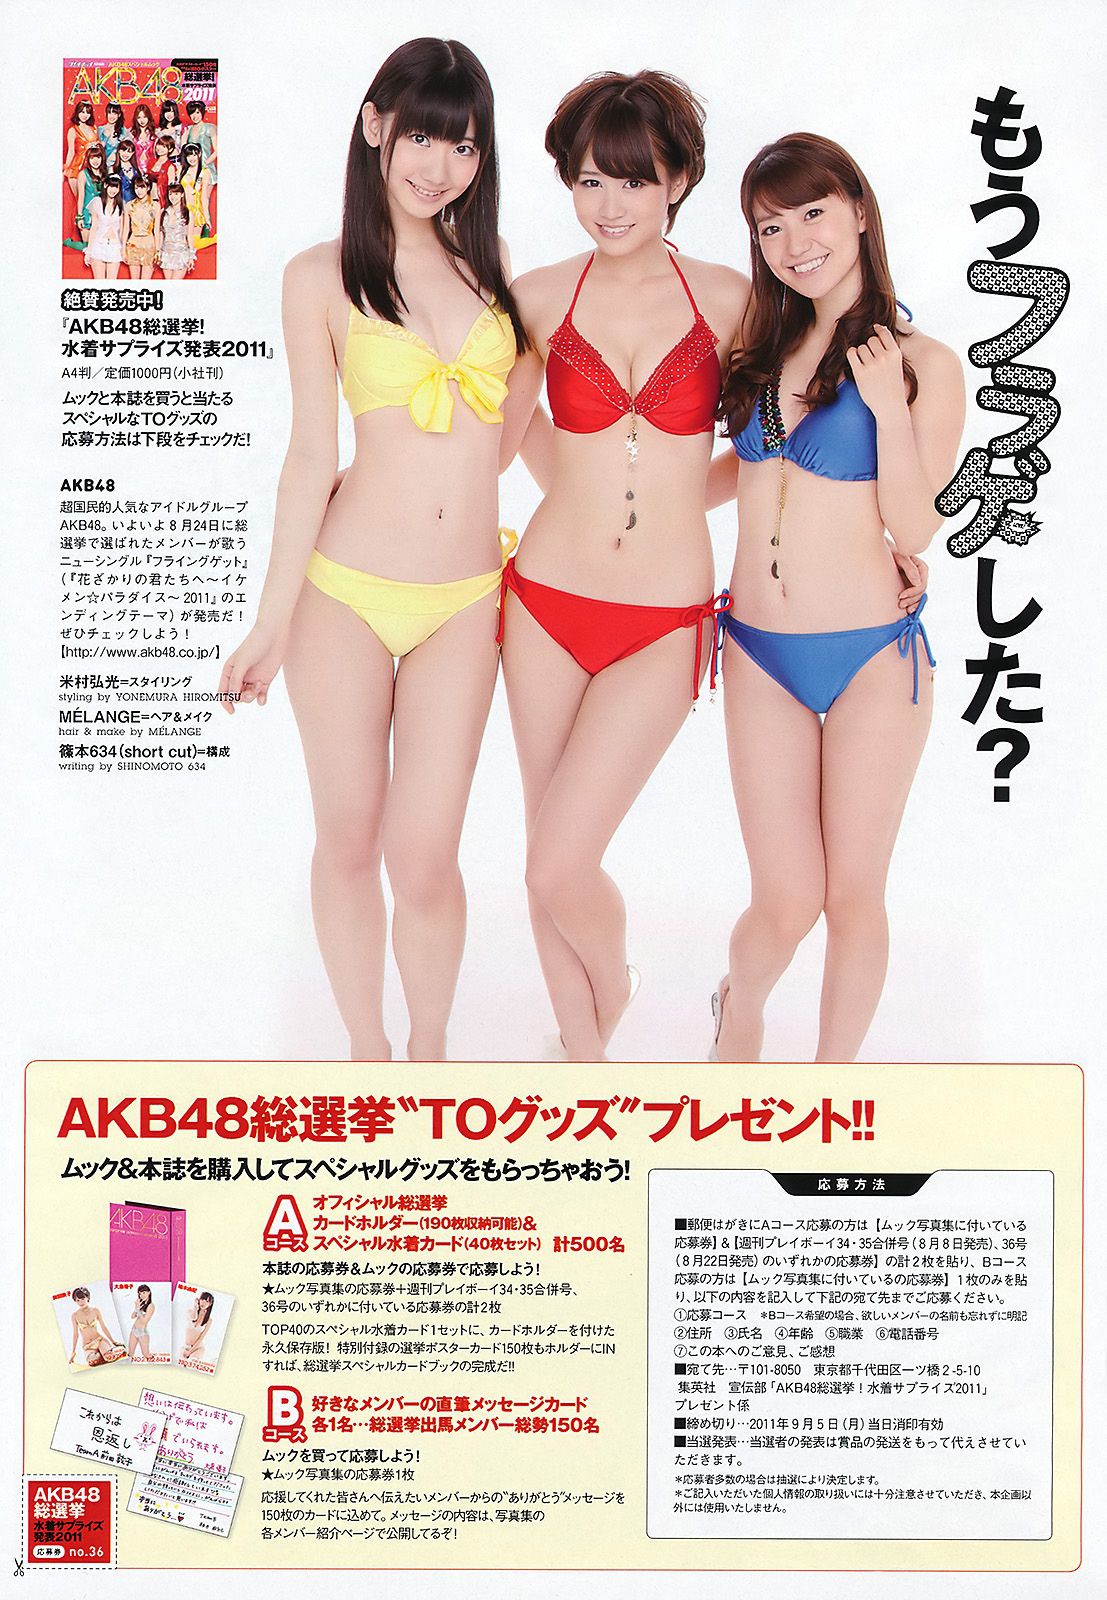 AKB48 Kasai Mikako Kasai Sakura Miyajima Kyoko Hinami Akina Minami Asana Mamoru Hiyori Momose [Wöchentlicher Playboy] 2011 Nr. 36 Foto